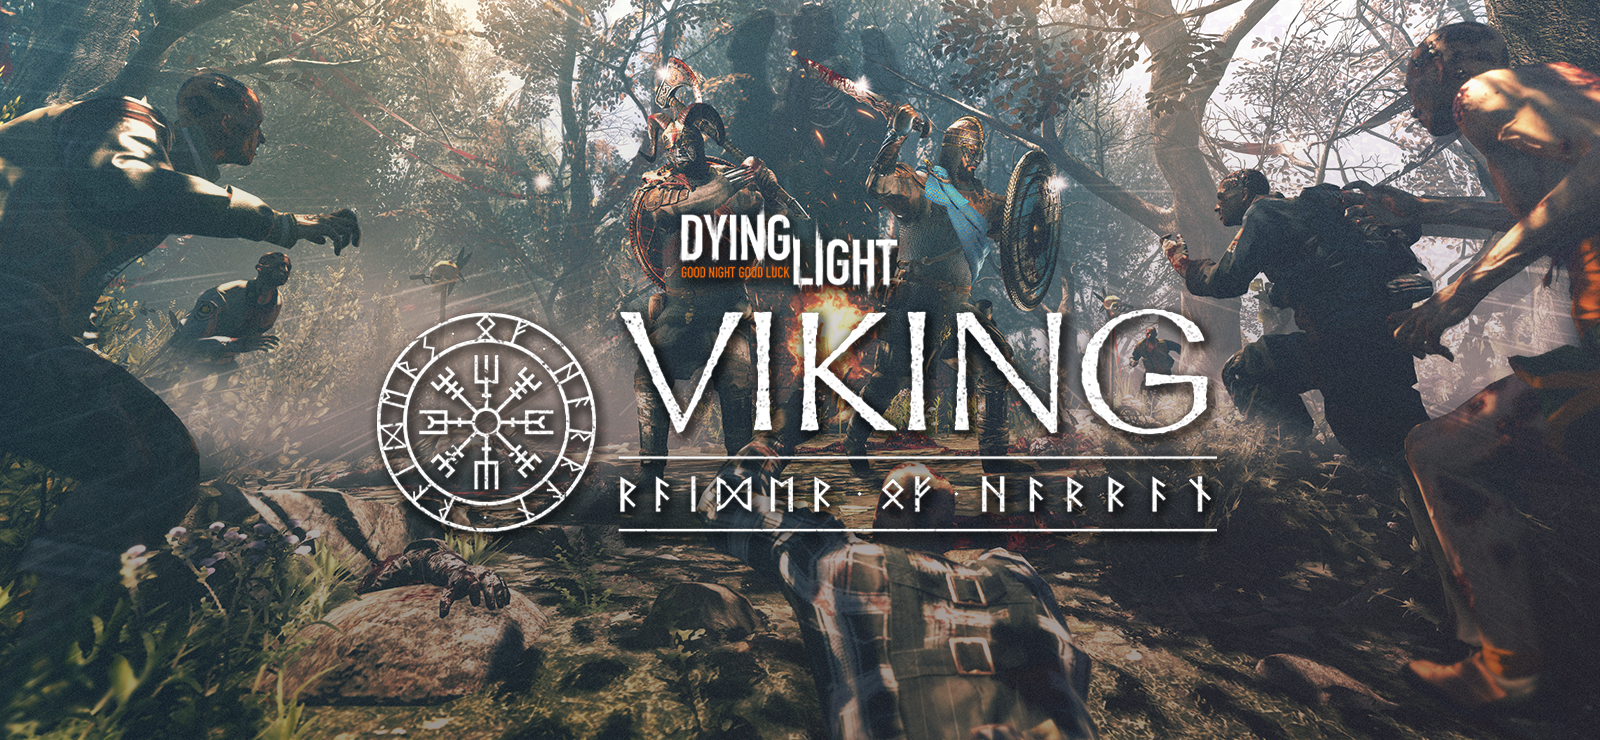 Dying Light - Viking: Raider Of Harran Bundle